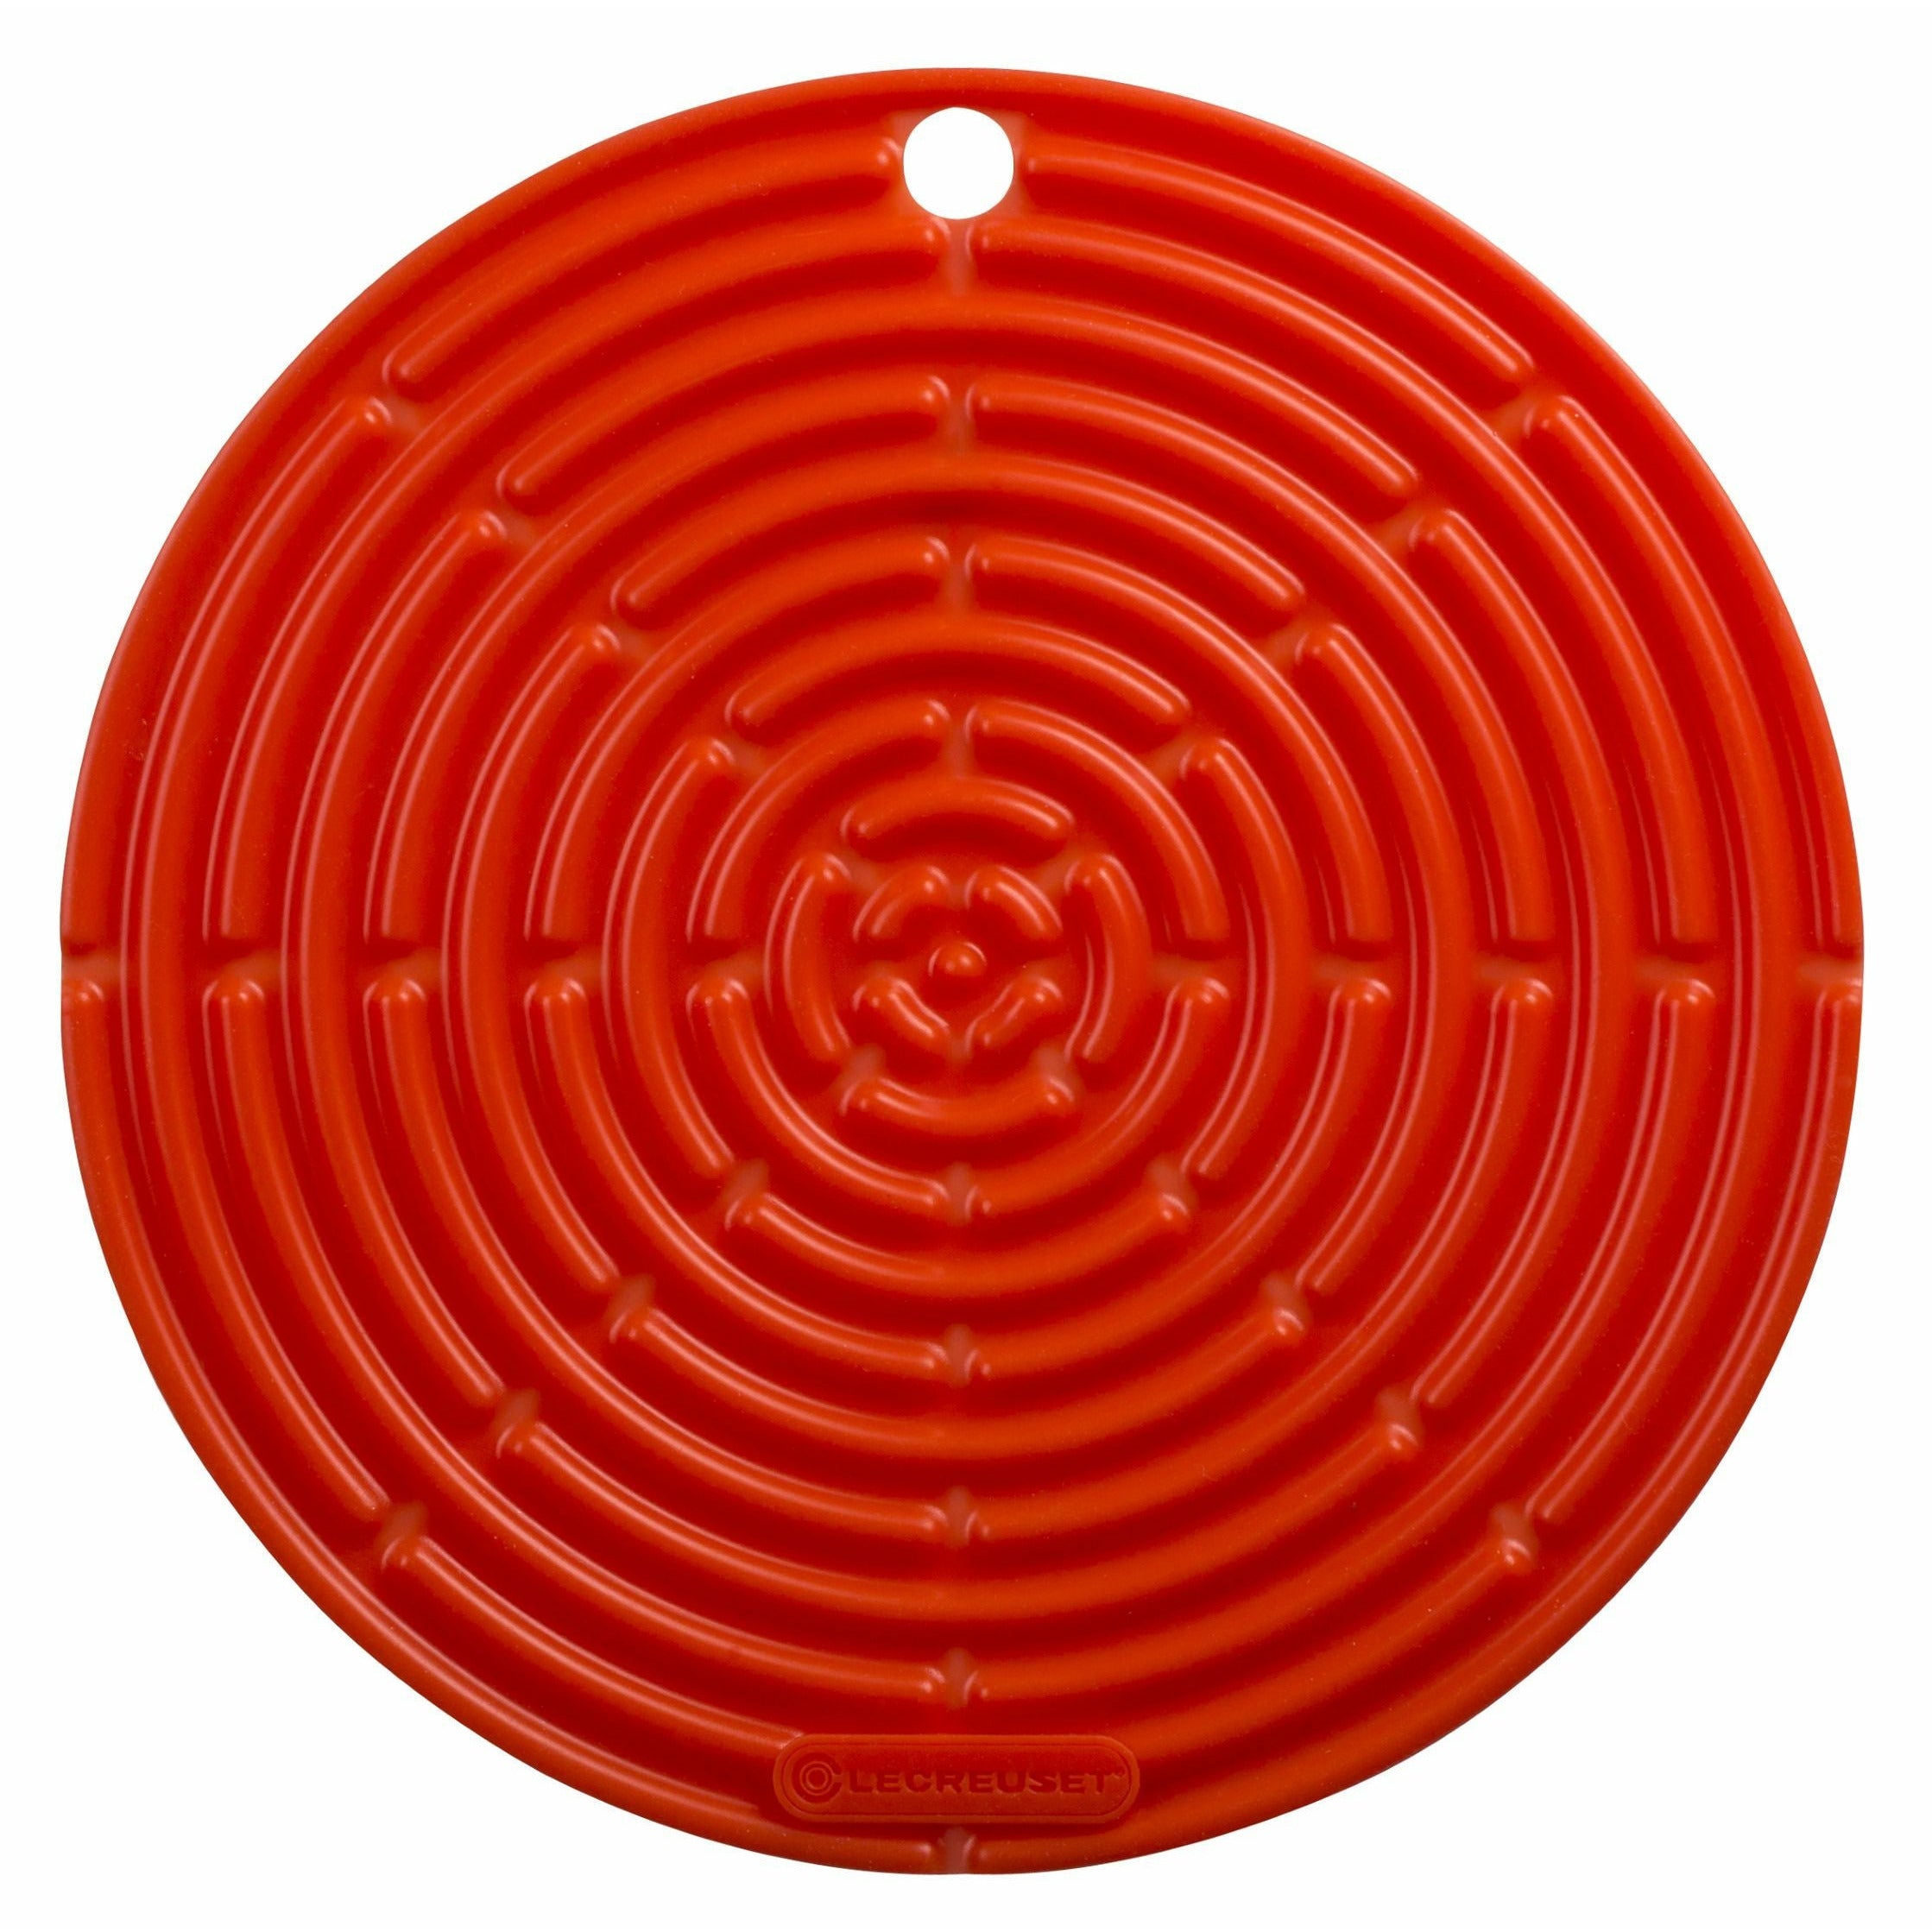 Le Creuset Round Potholder Classic 20,5 cm, ovn rød